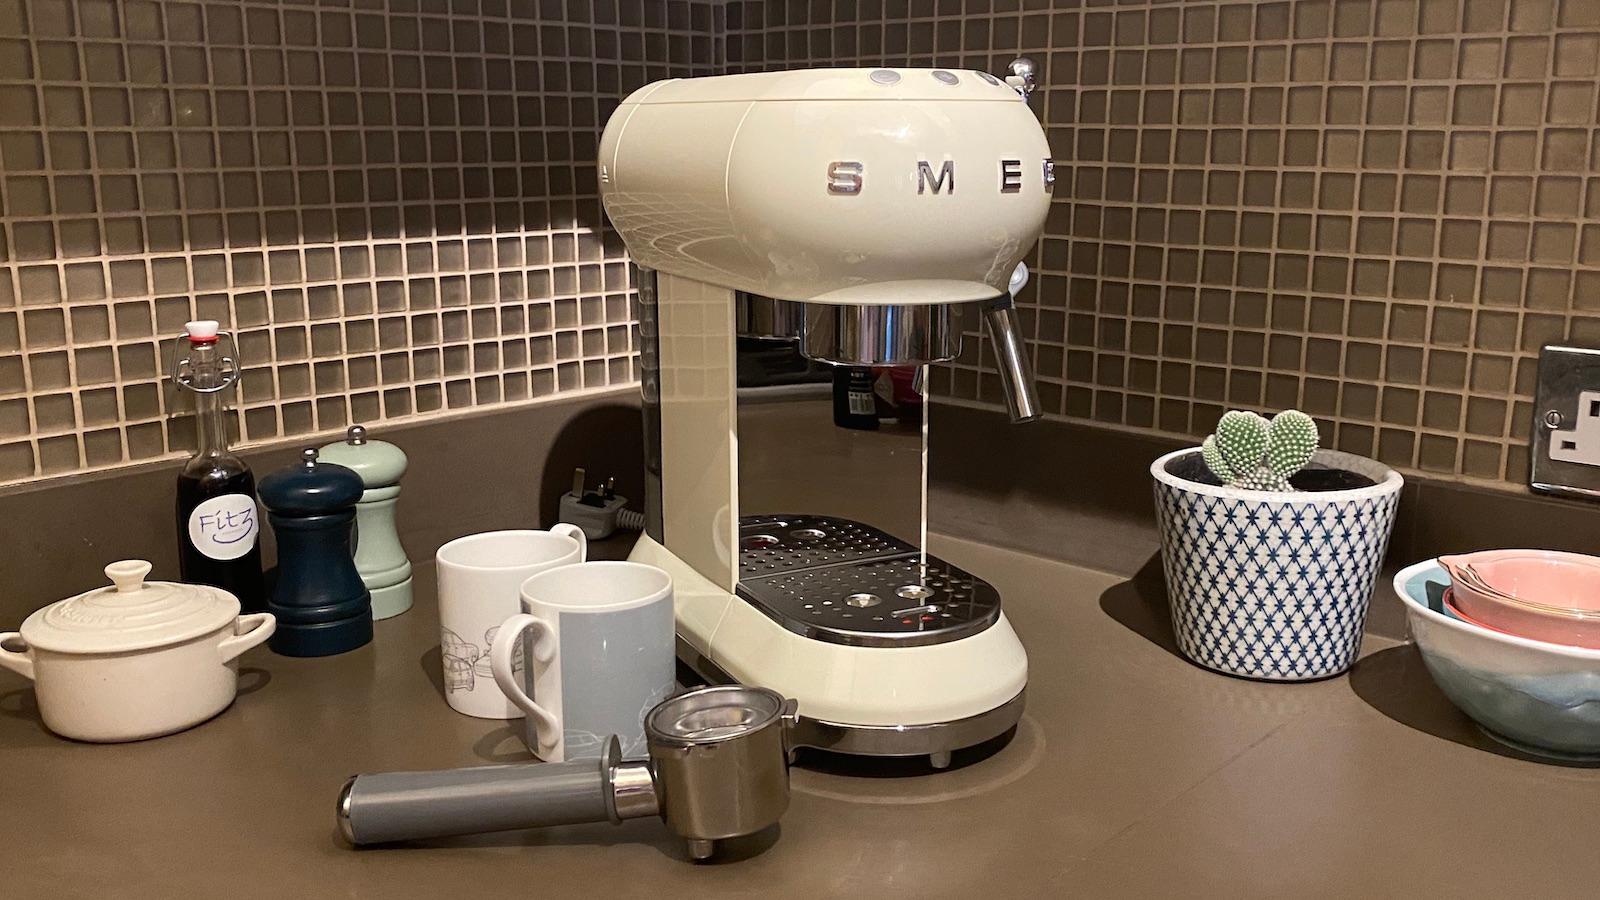   Smeg Espresso Coffee Maker ECF01 - La máquina de espresso más elegante